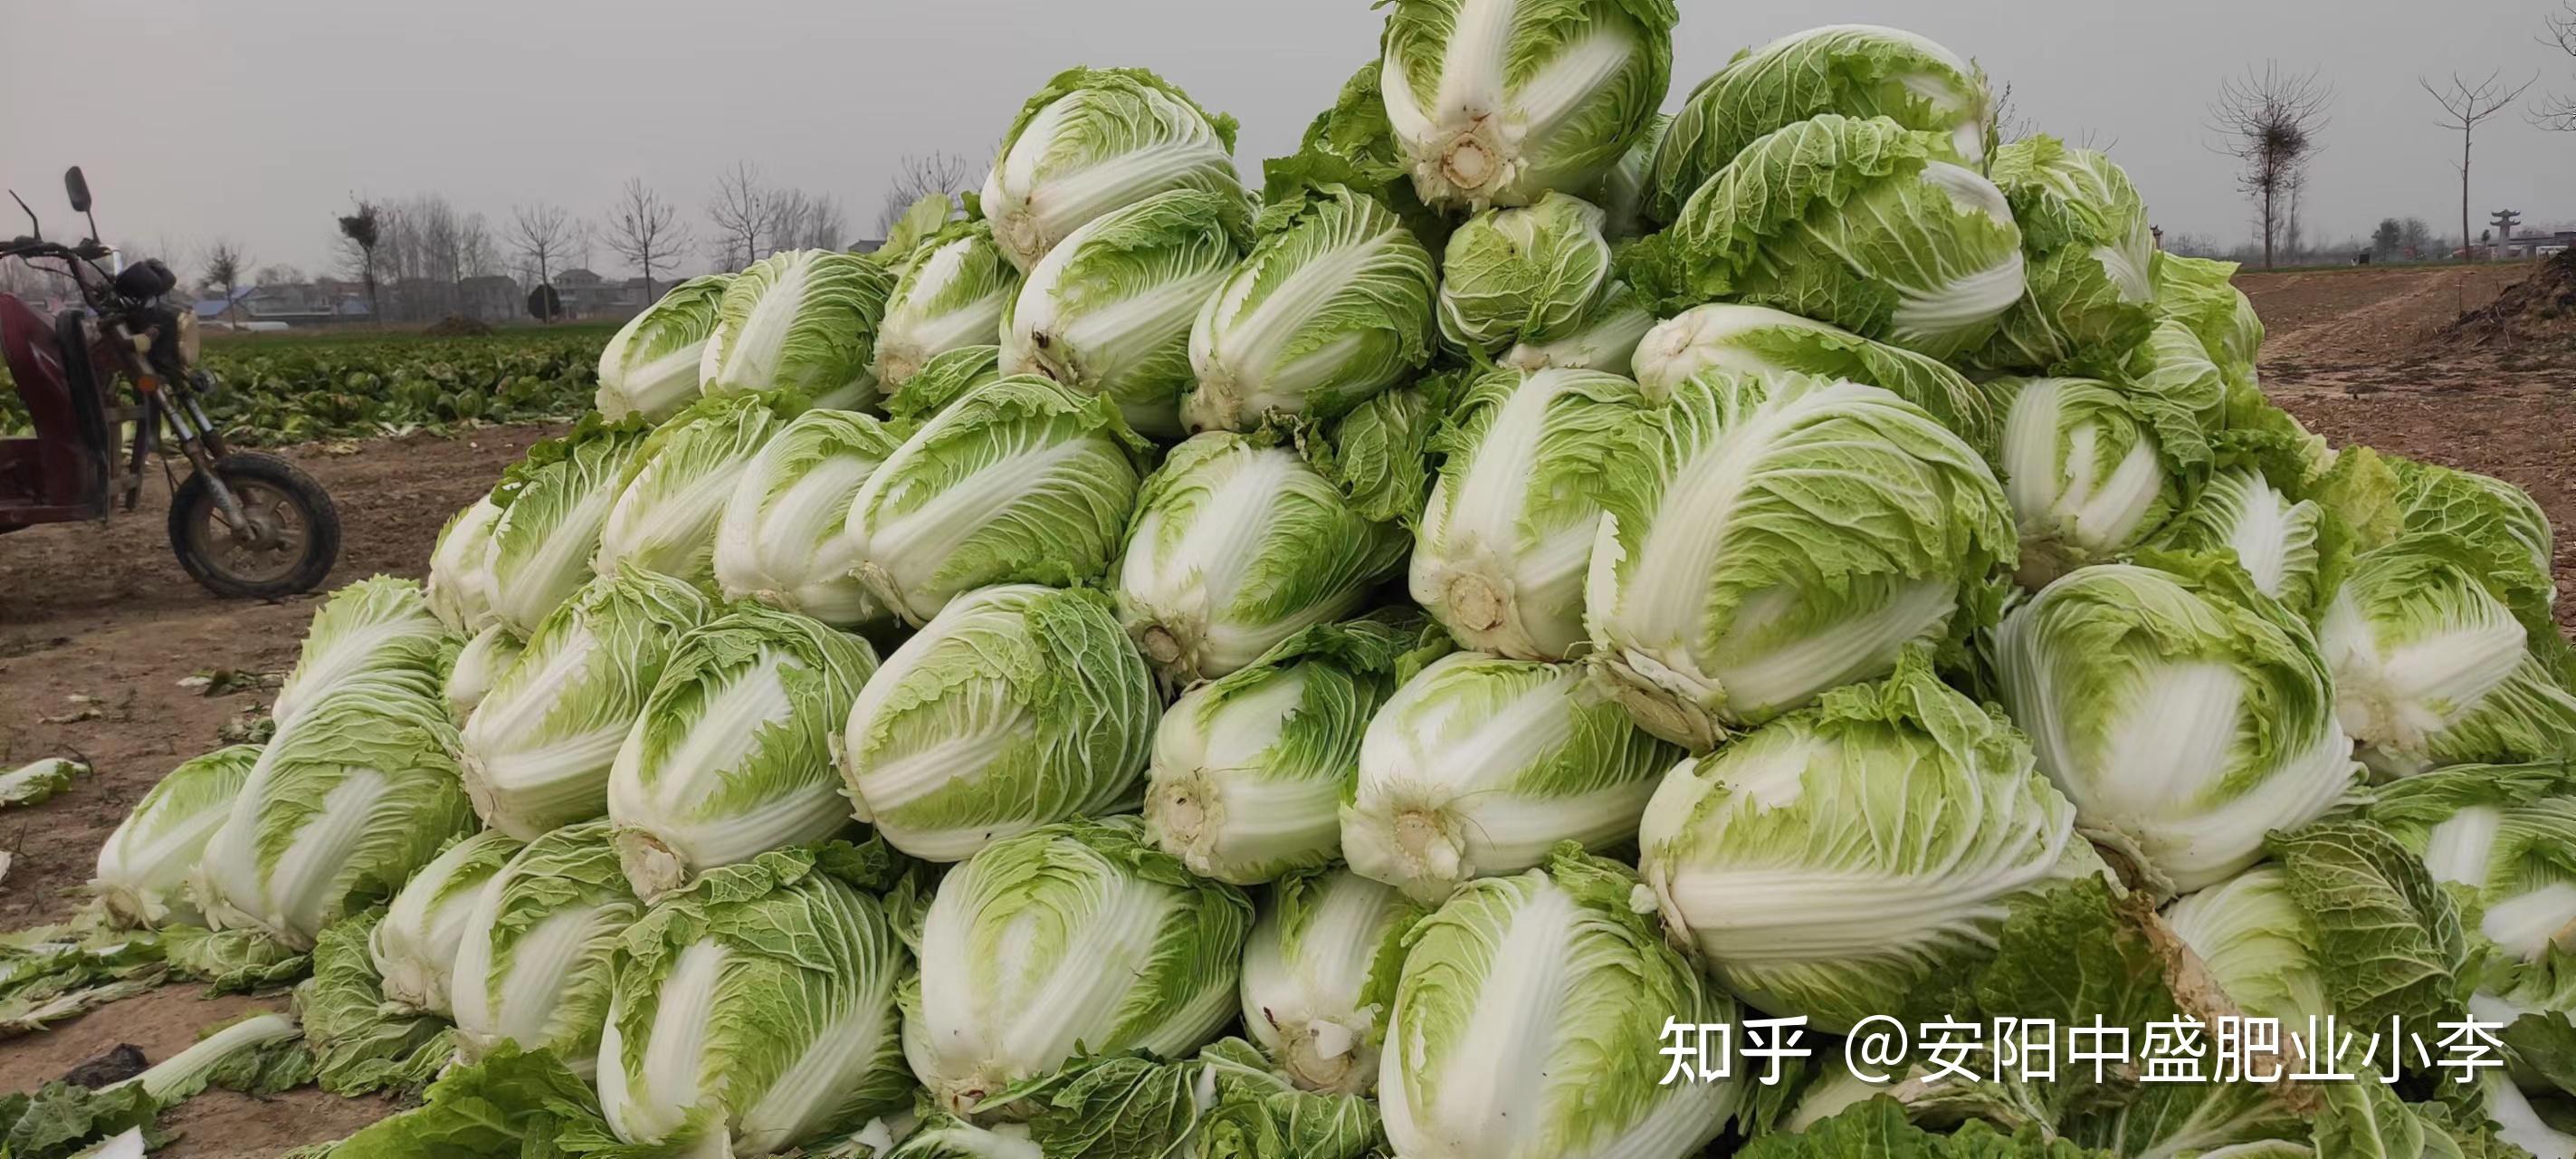 今年白菜花质优价高 菜农笑开颜--温岭新闻网